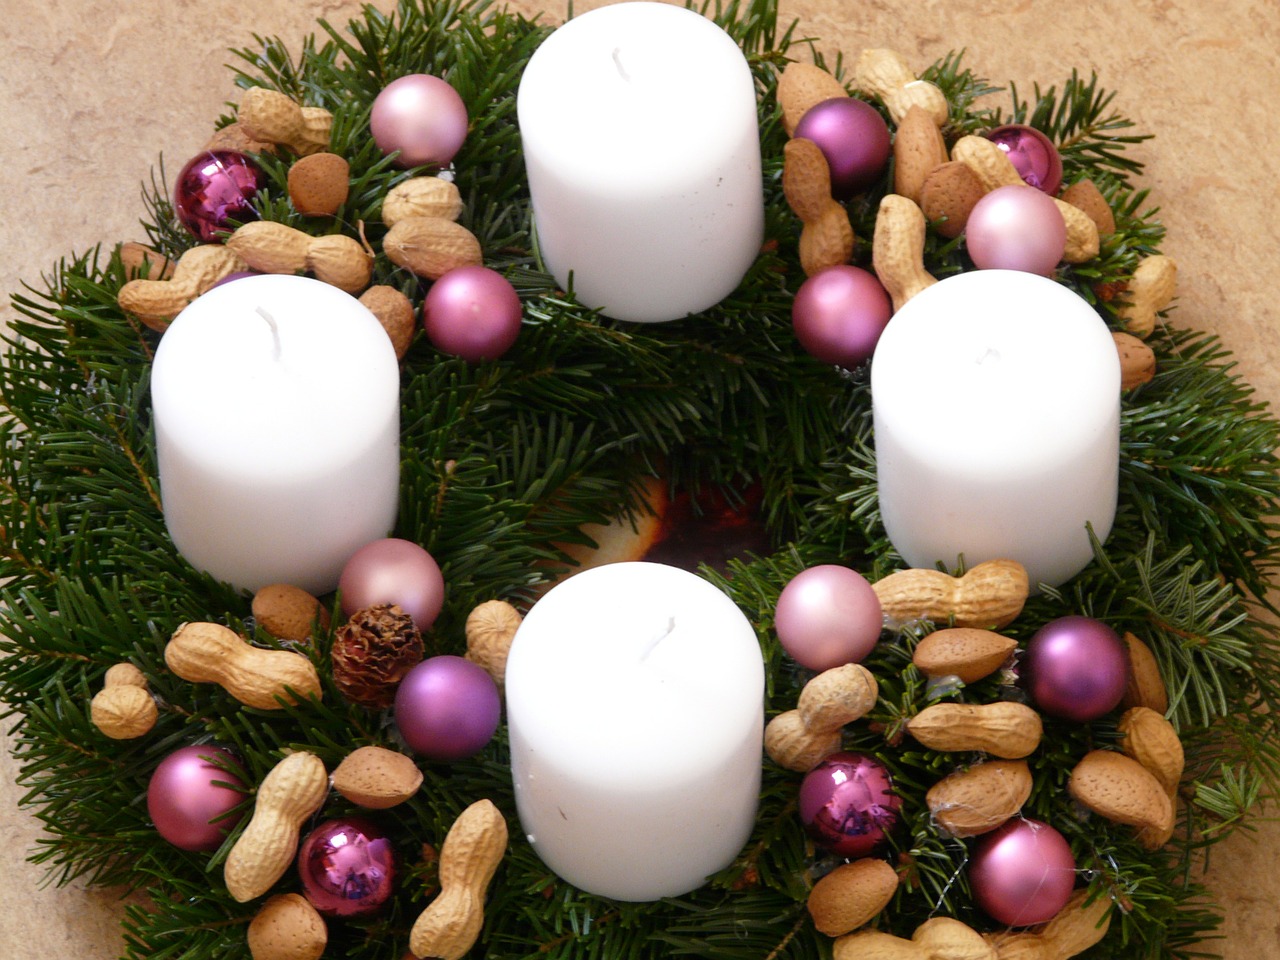 Slovak Christmas Traditions